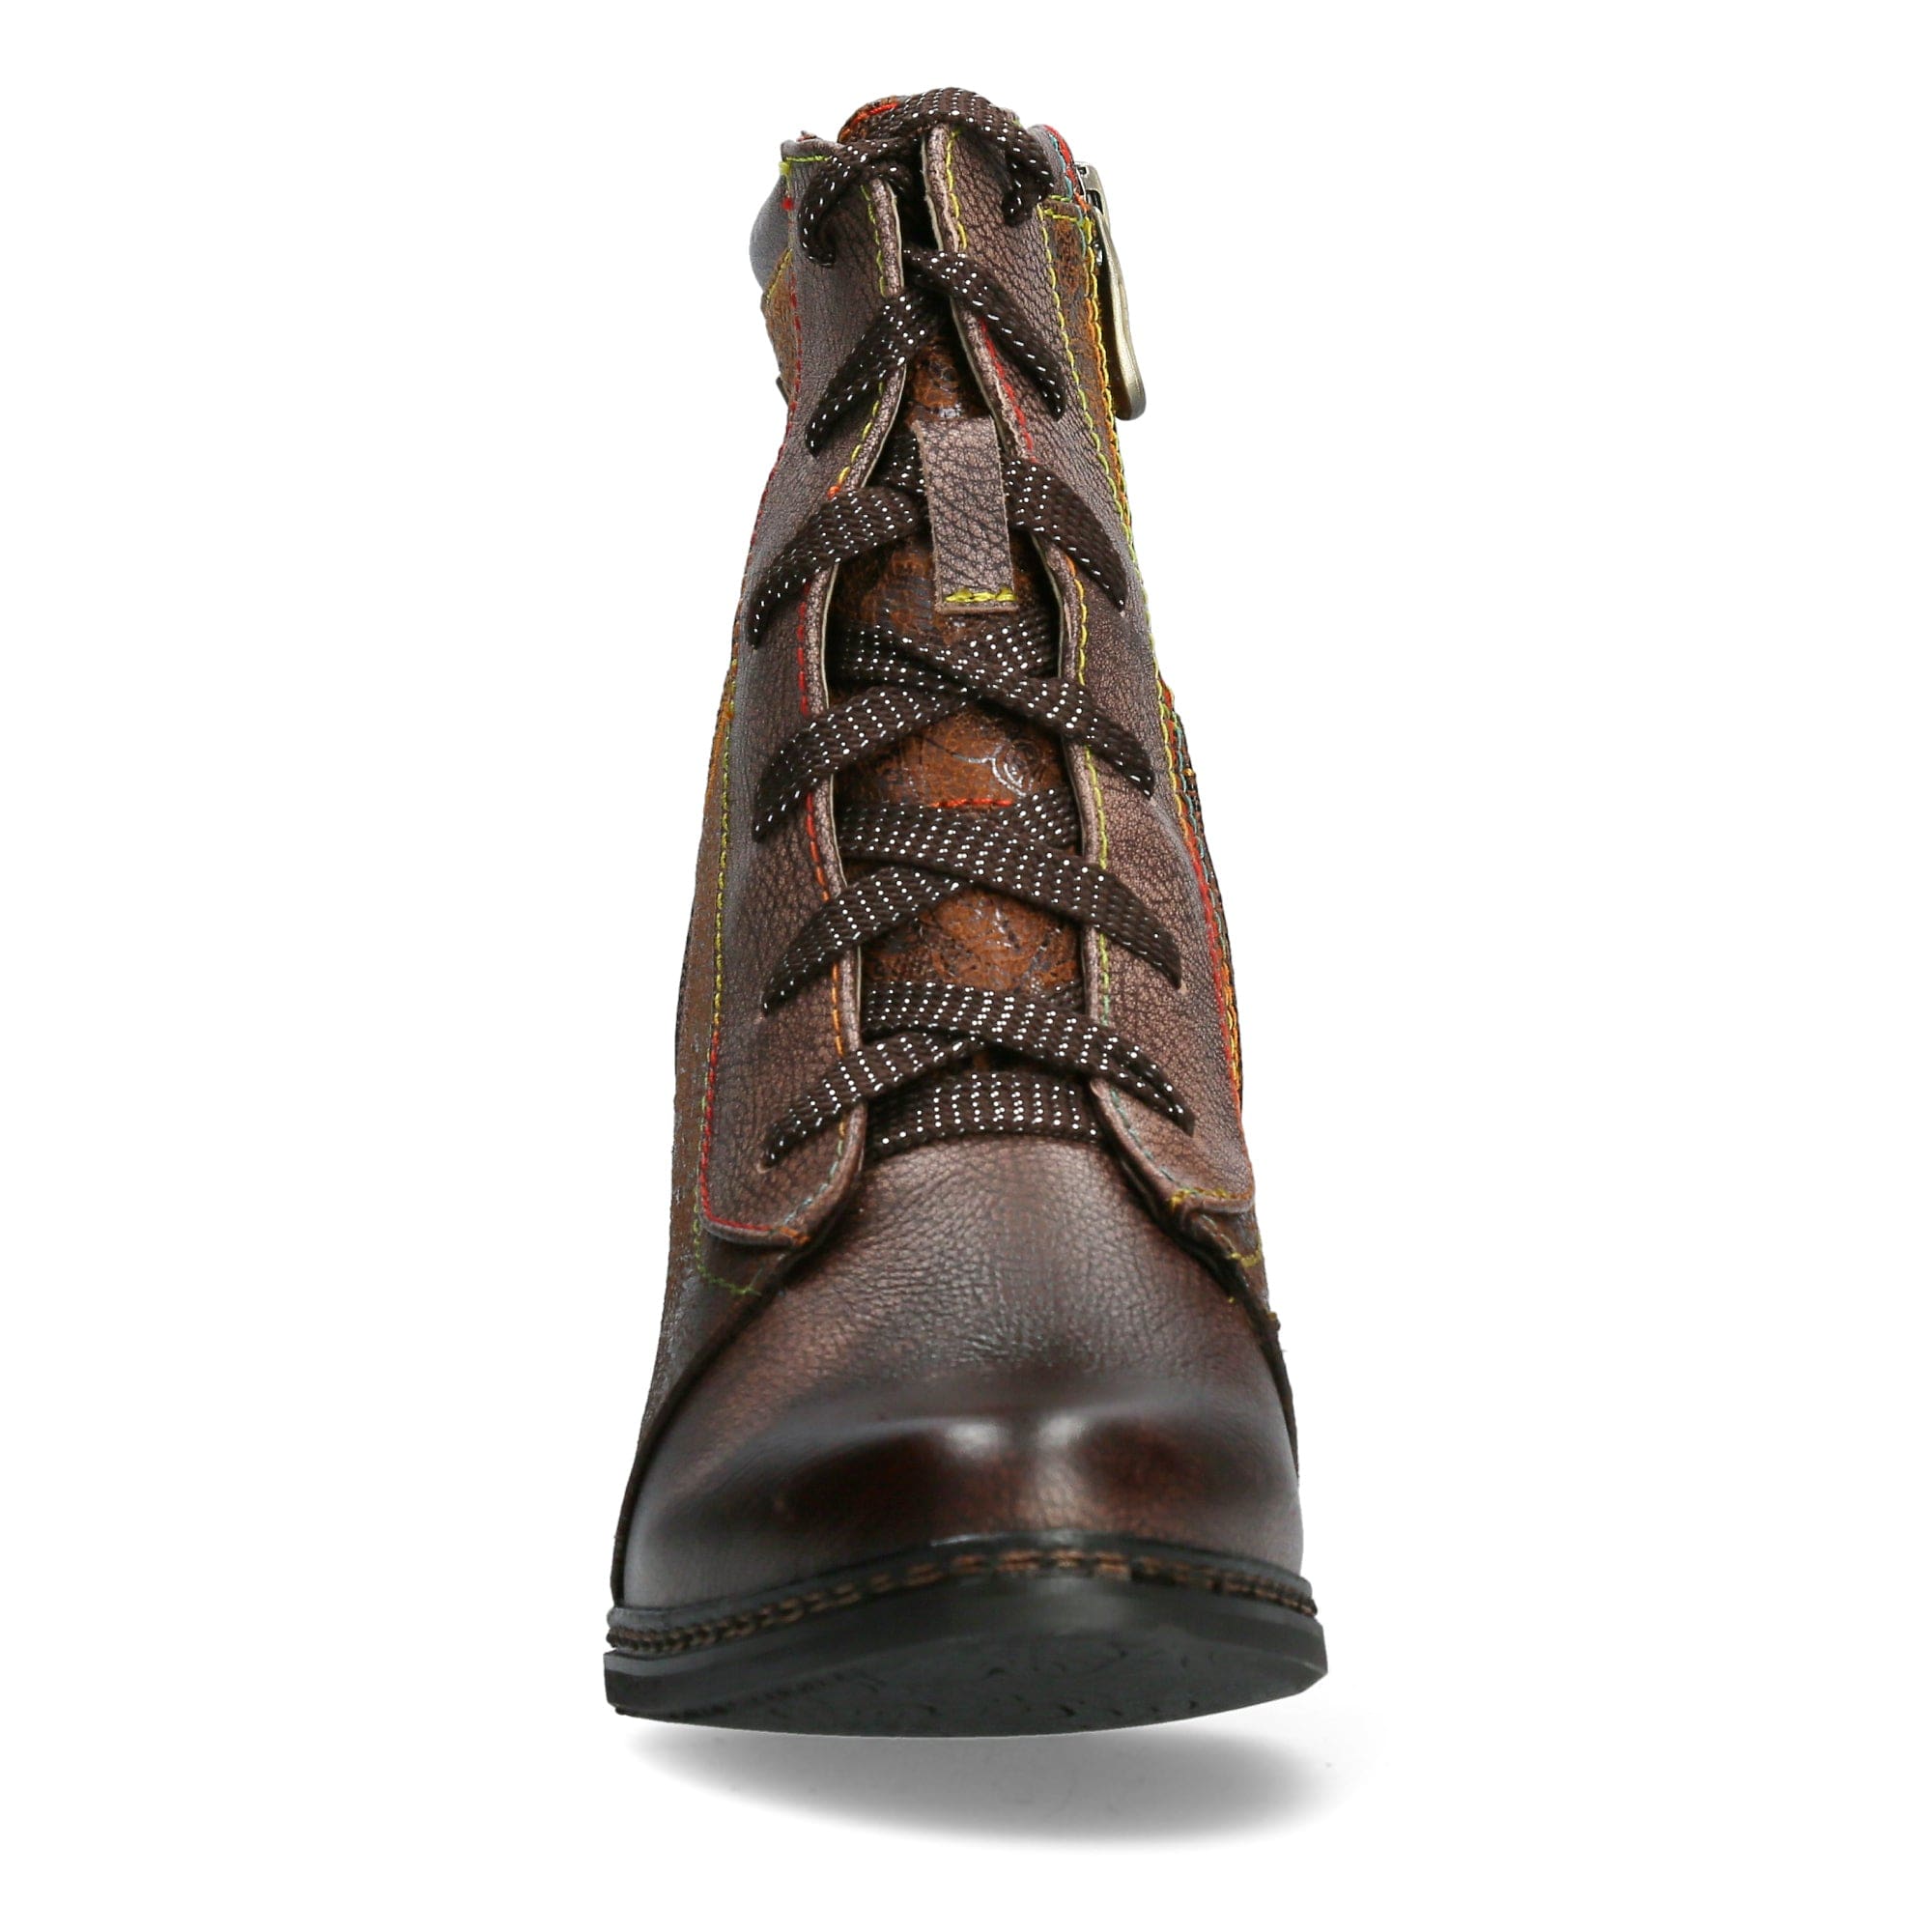 Shoe AGCATHEO 132 - Boots